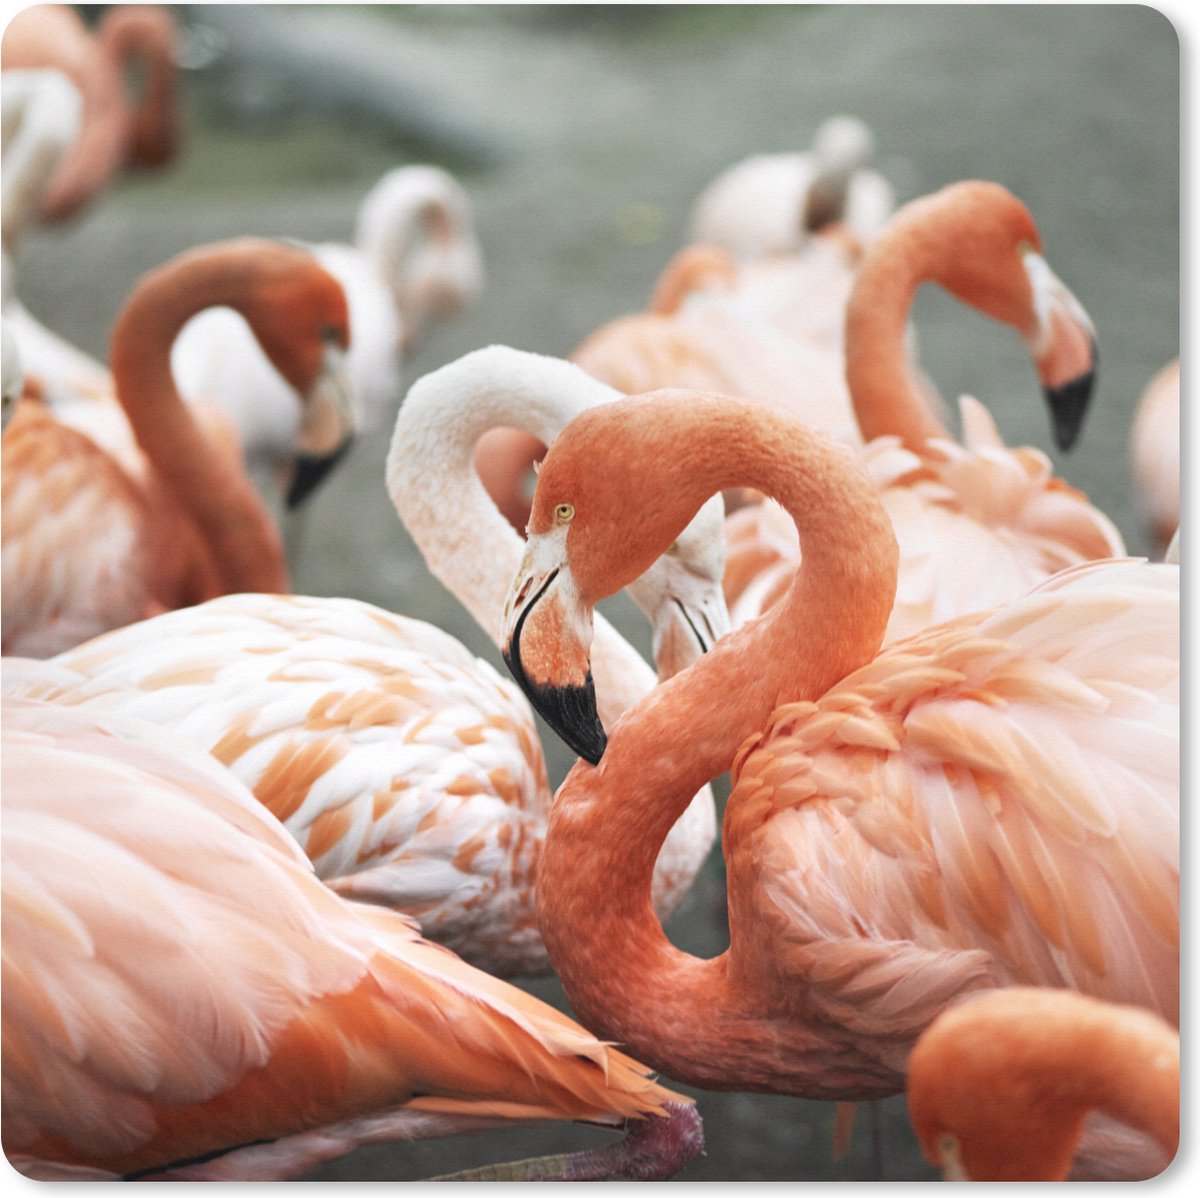 Muismat XXL - Bureau onderlegger - Bureau mat - Group roze Flamingo's op de plassen - 80x80 cm - XXL muismat